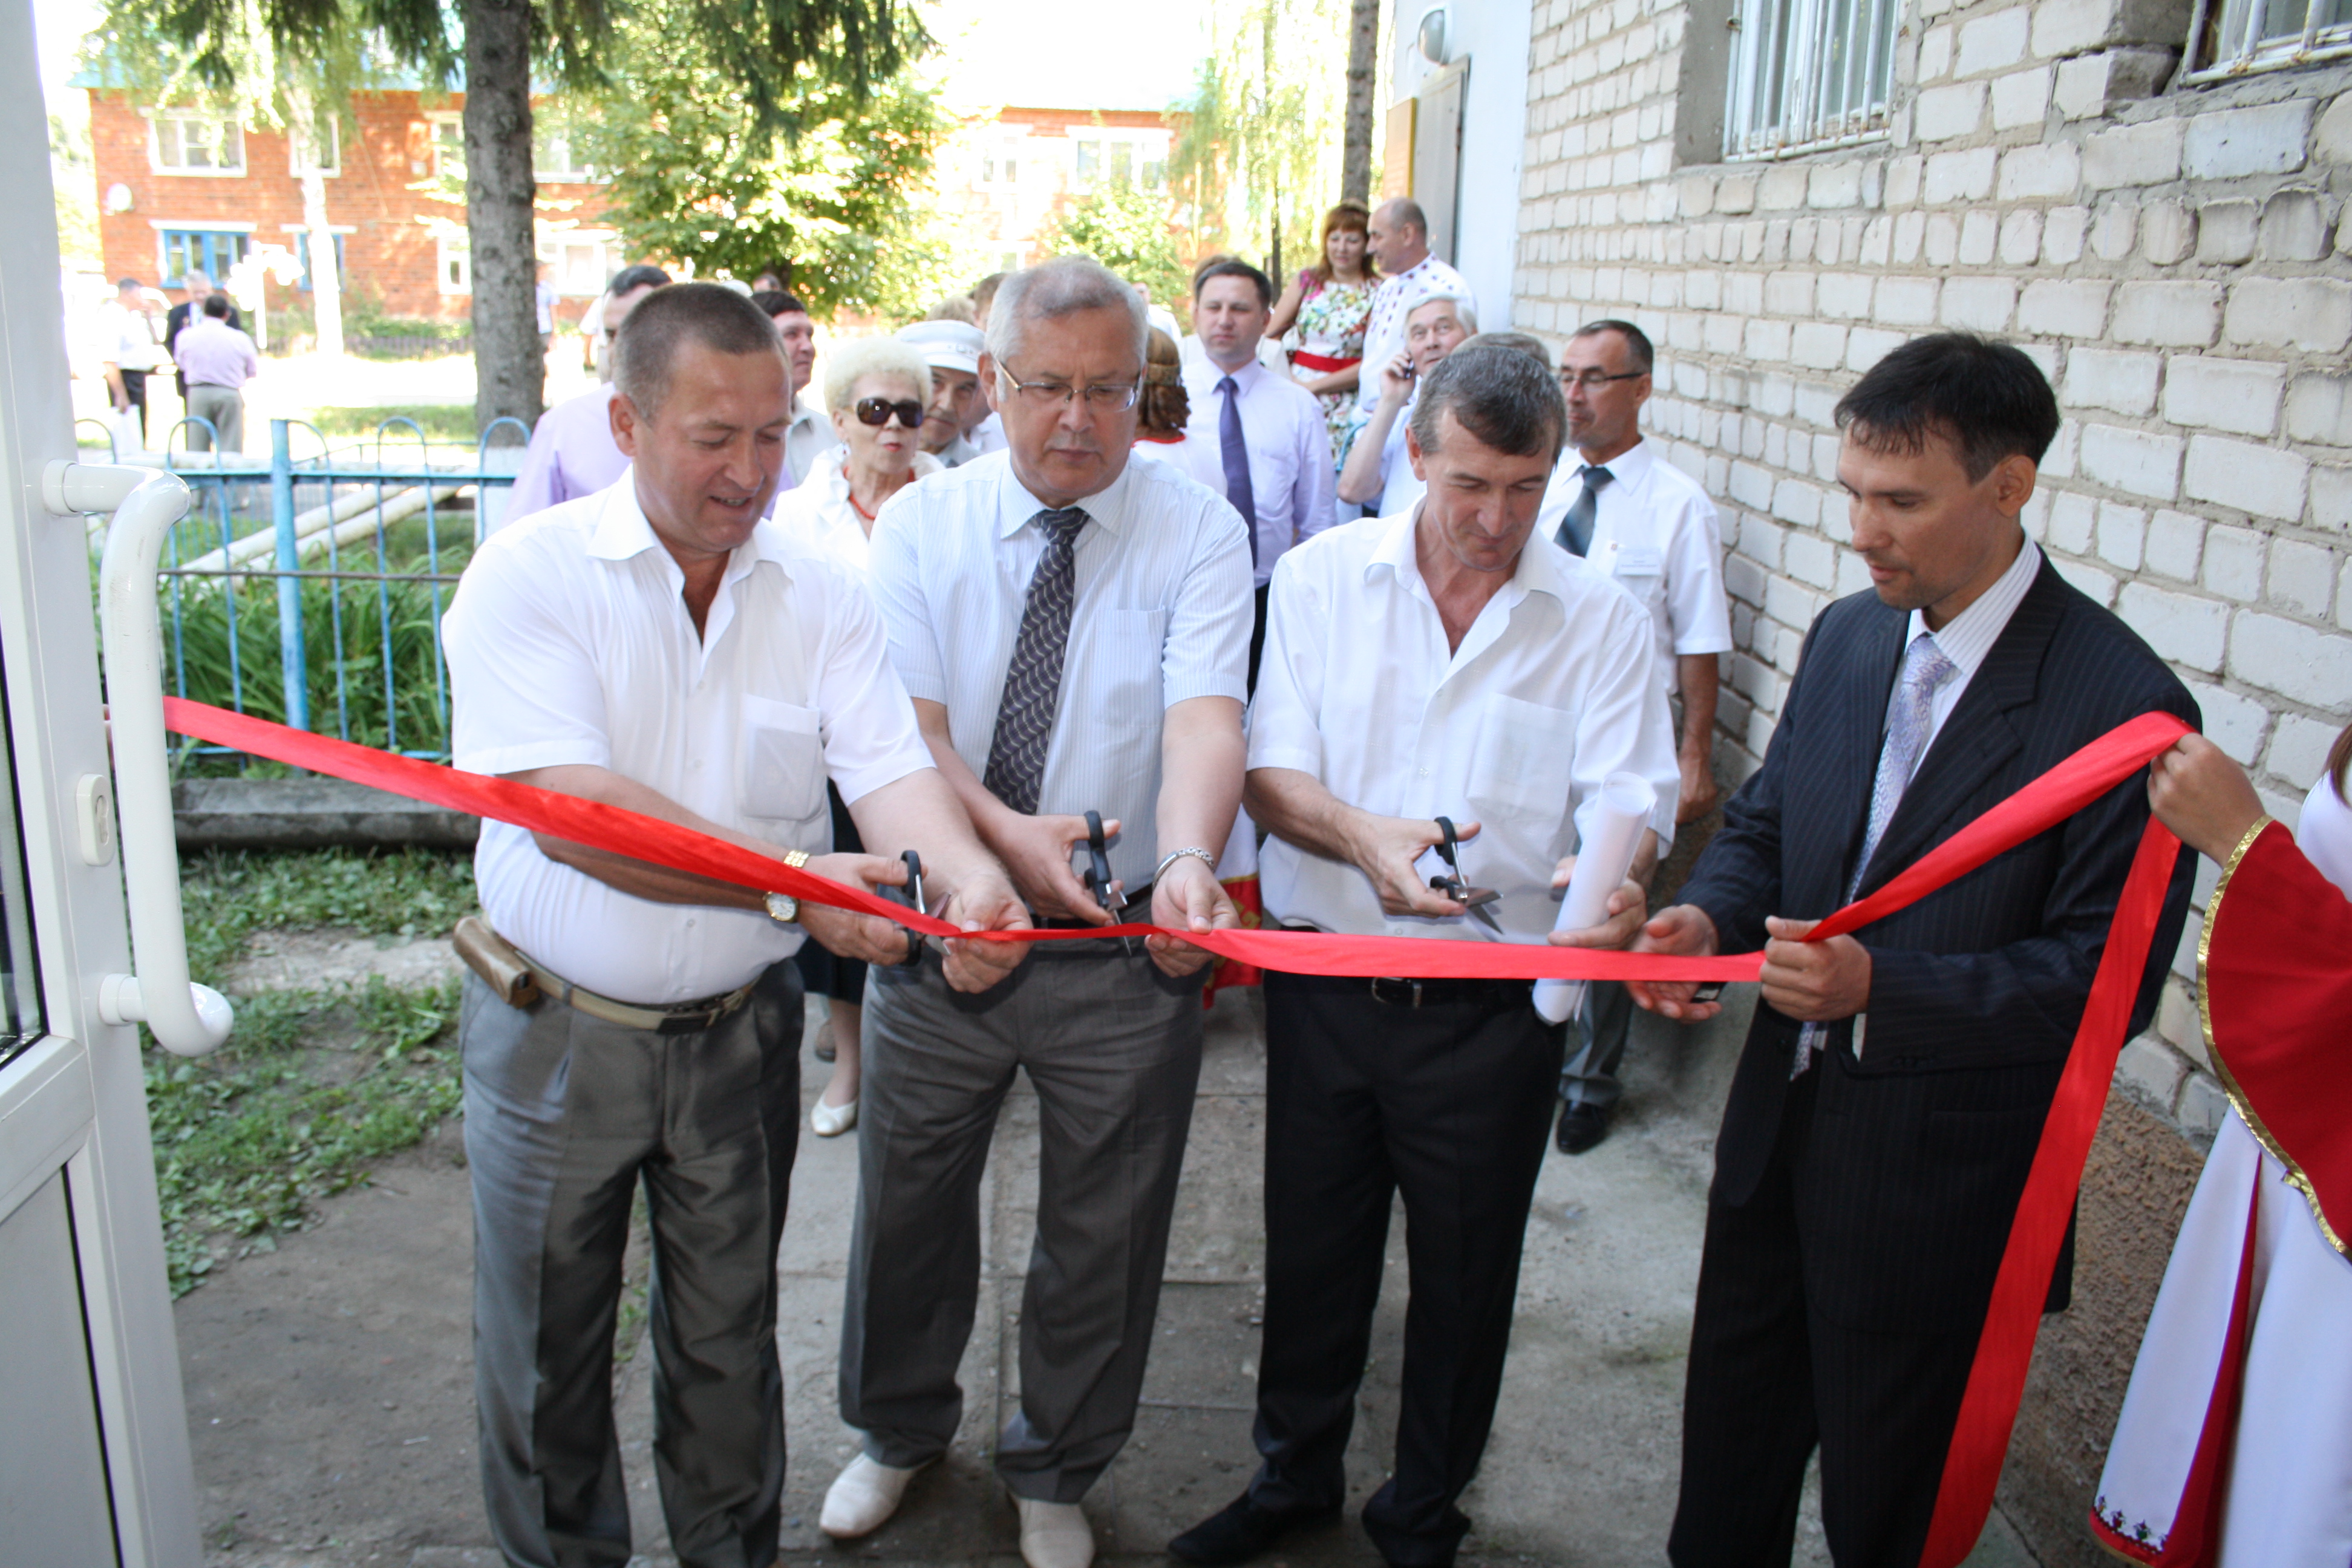 12:45 В рамках празднования 85-летнего юбилея Красночетайского района состоялось открытие филиала швейного цеха ООО «Швейная фабрика»